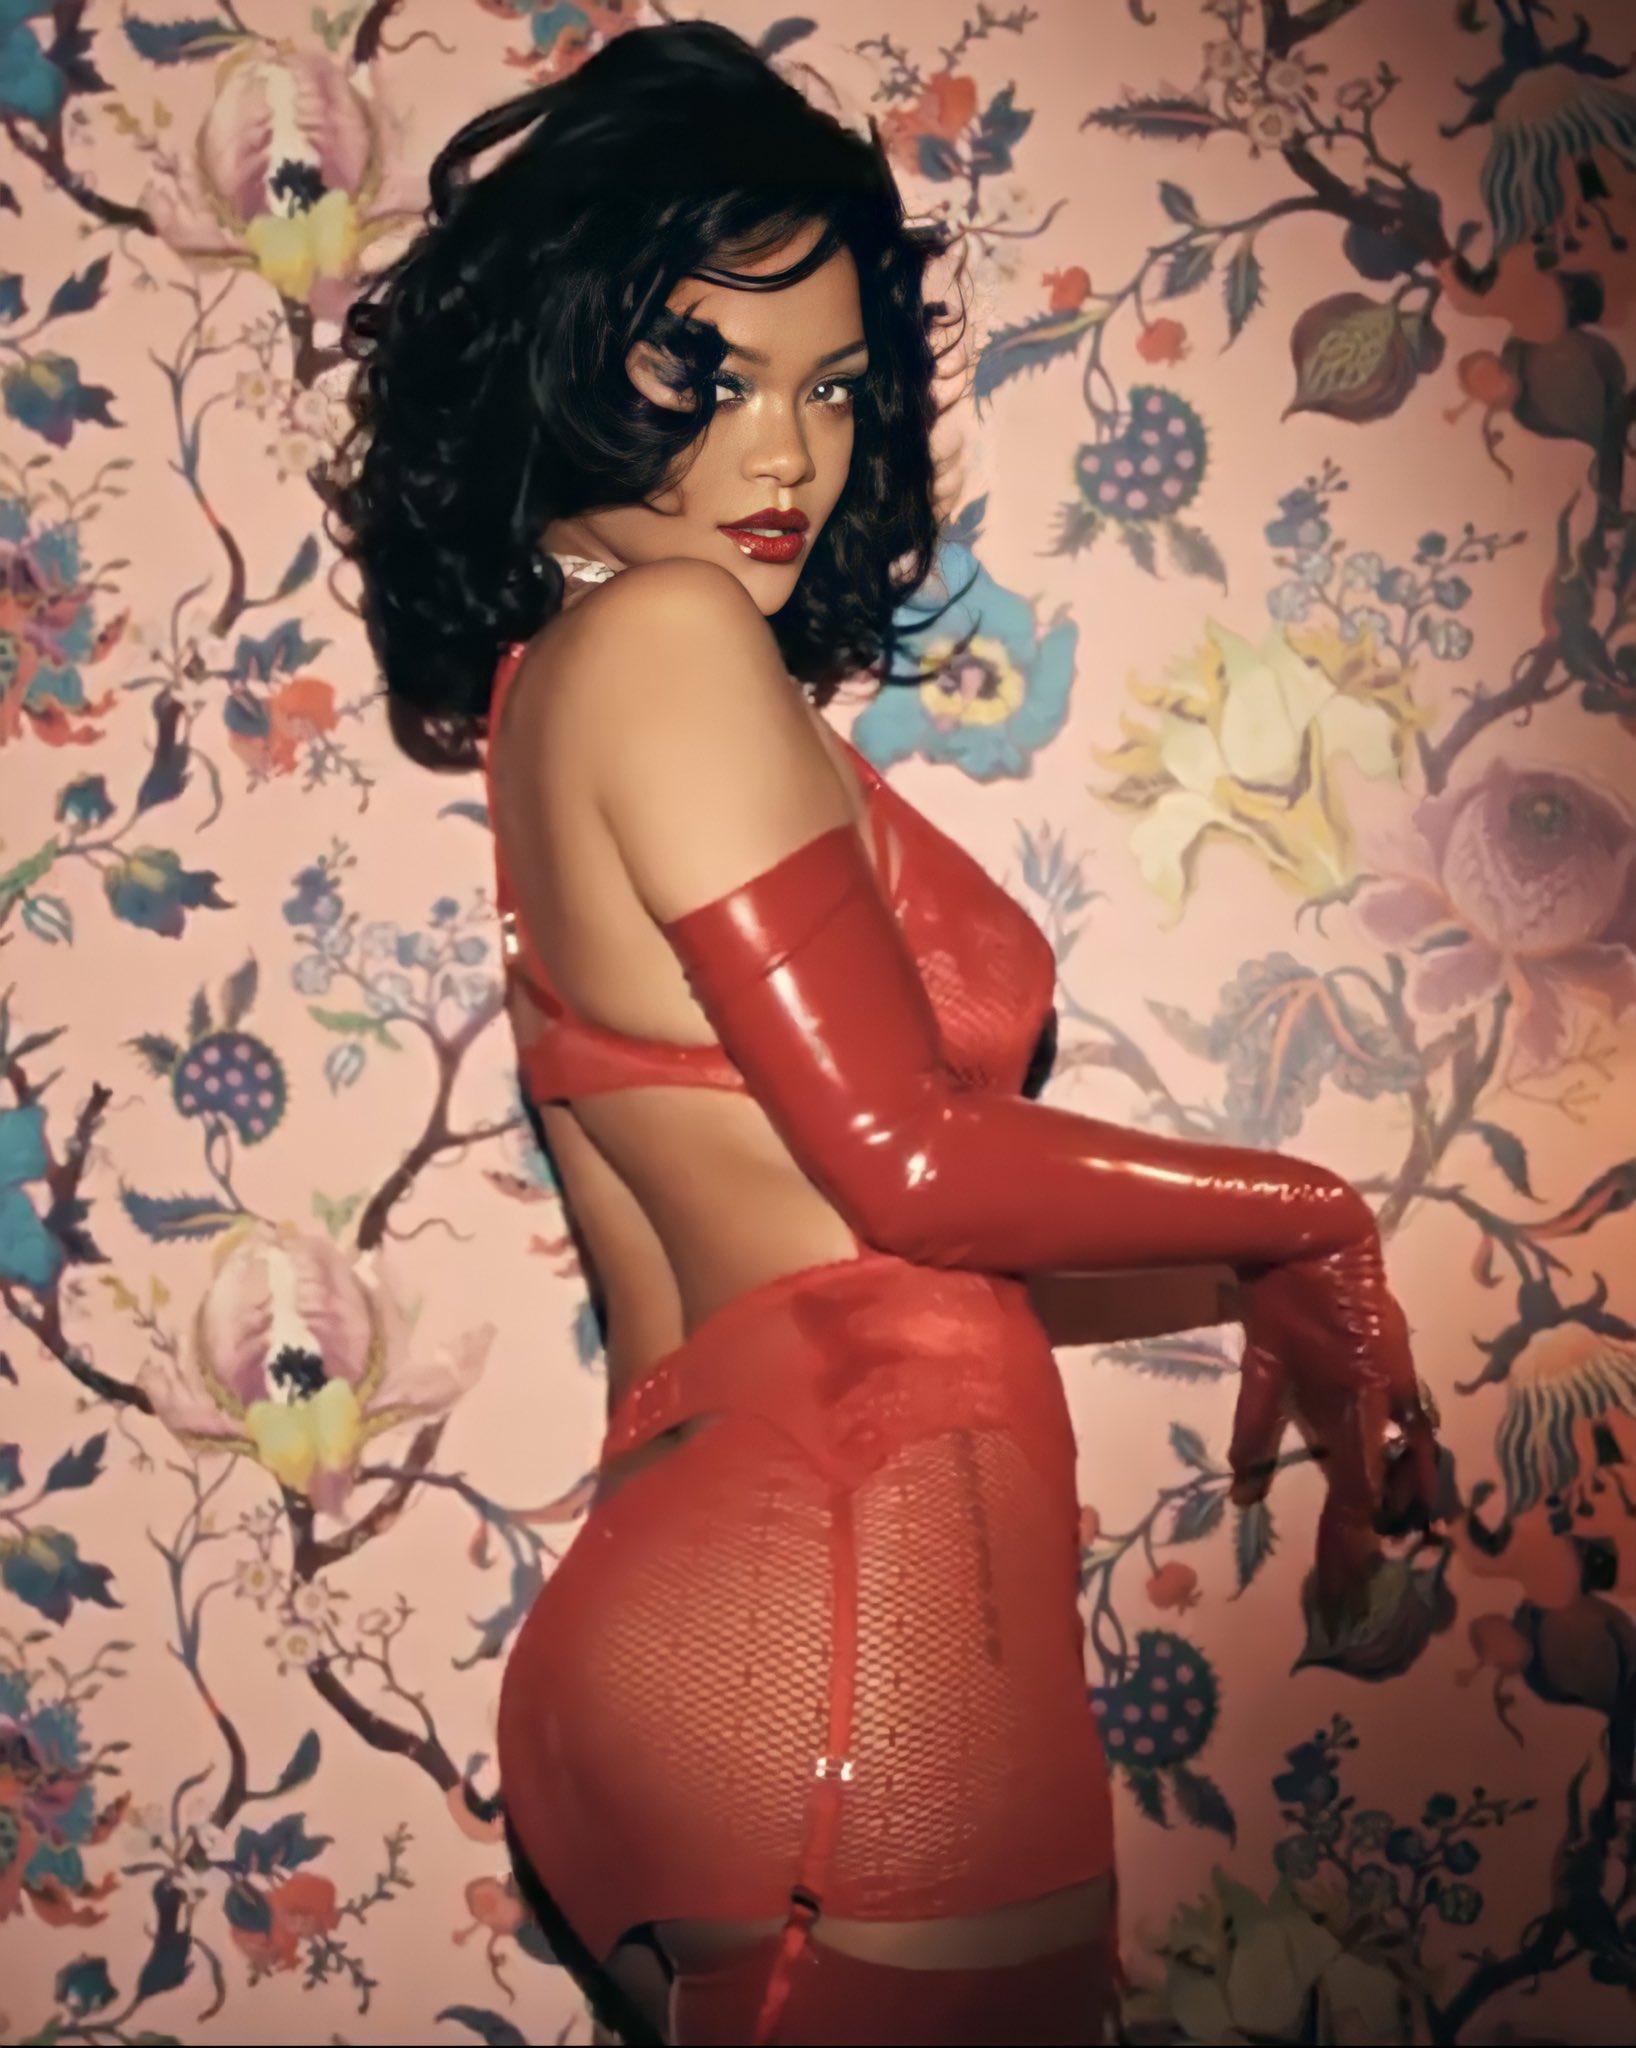 Photo n°7 : Rihanna veut tre votre Saint-Valentin!